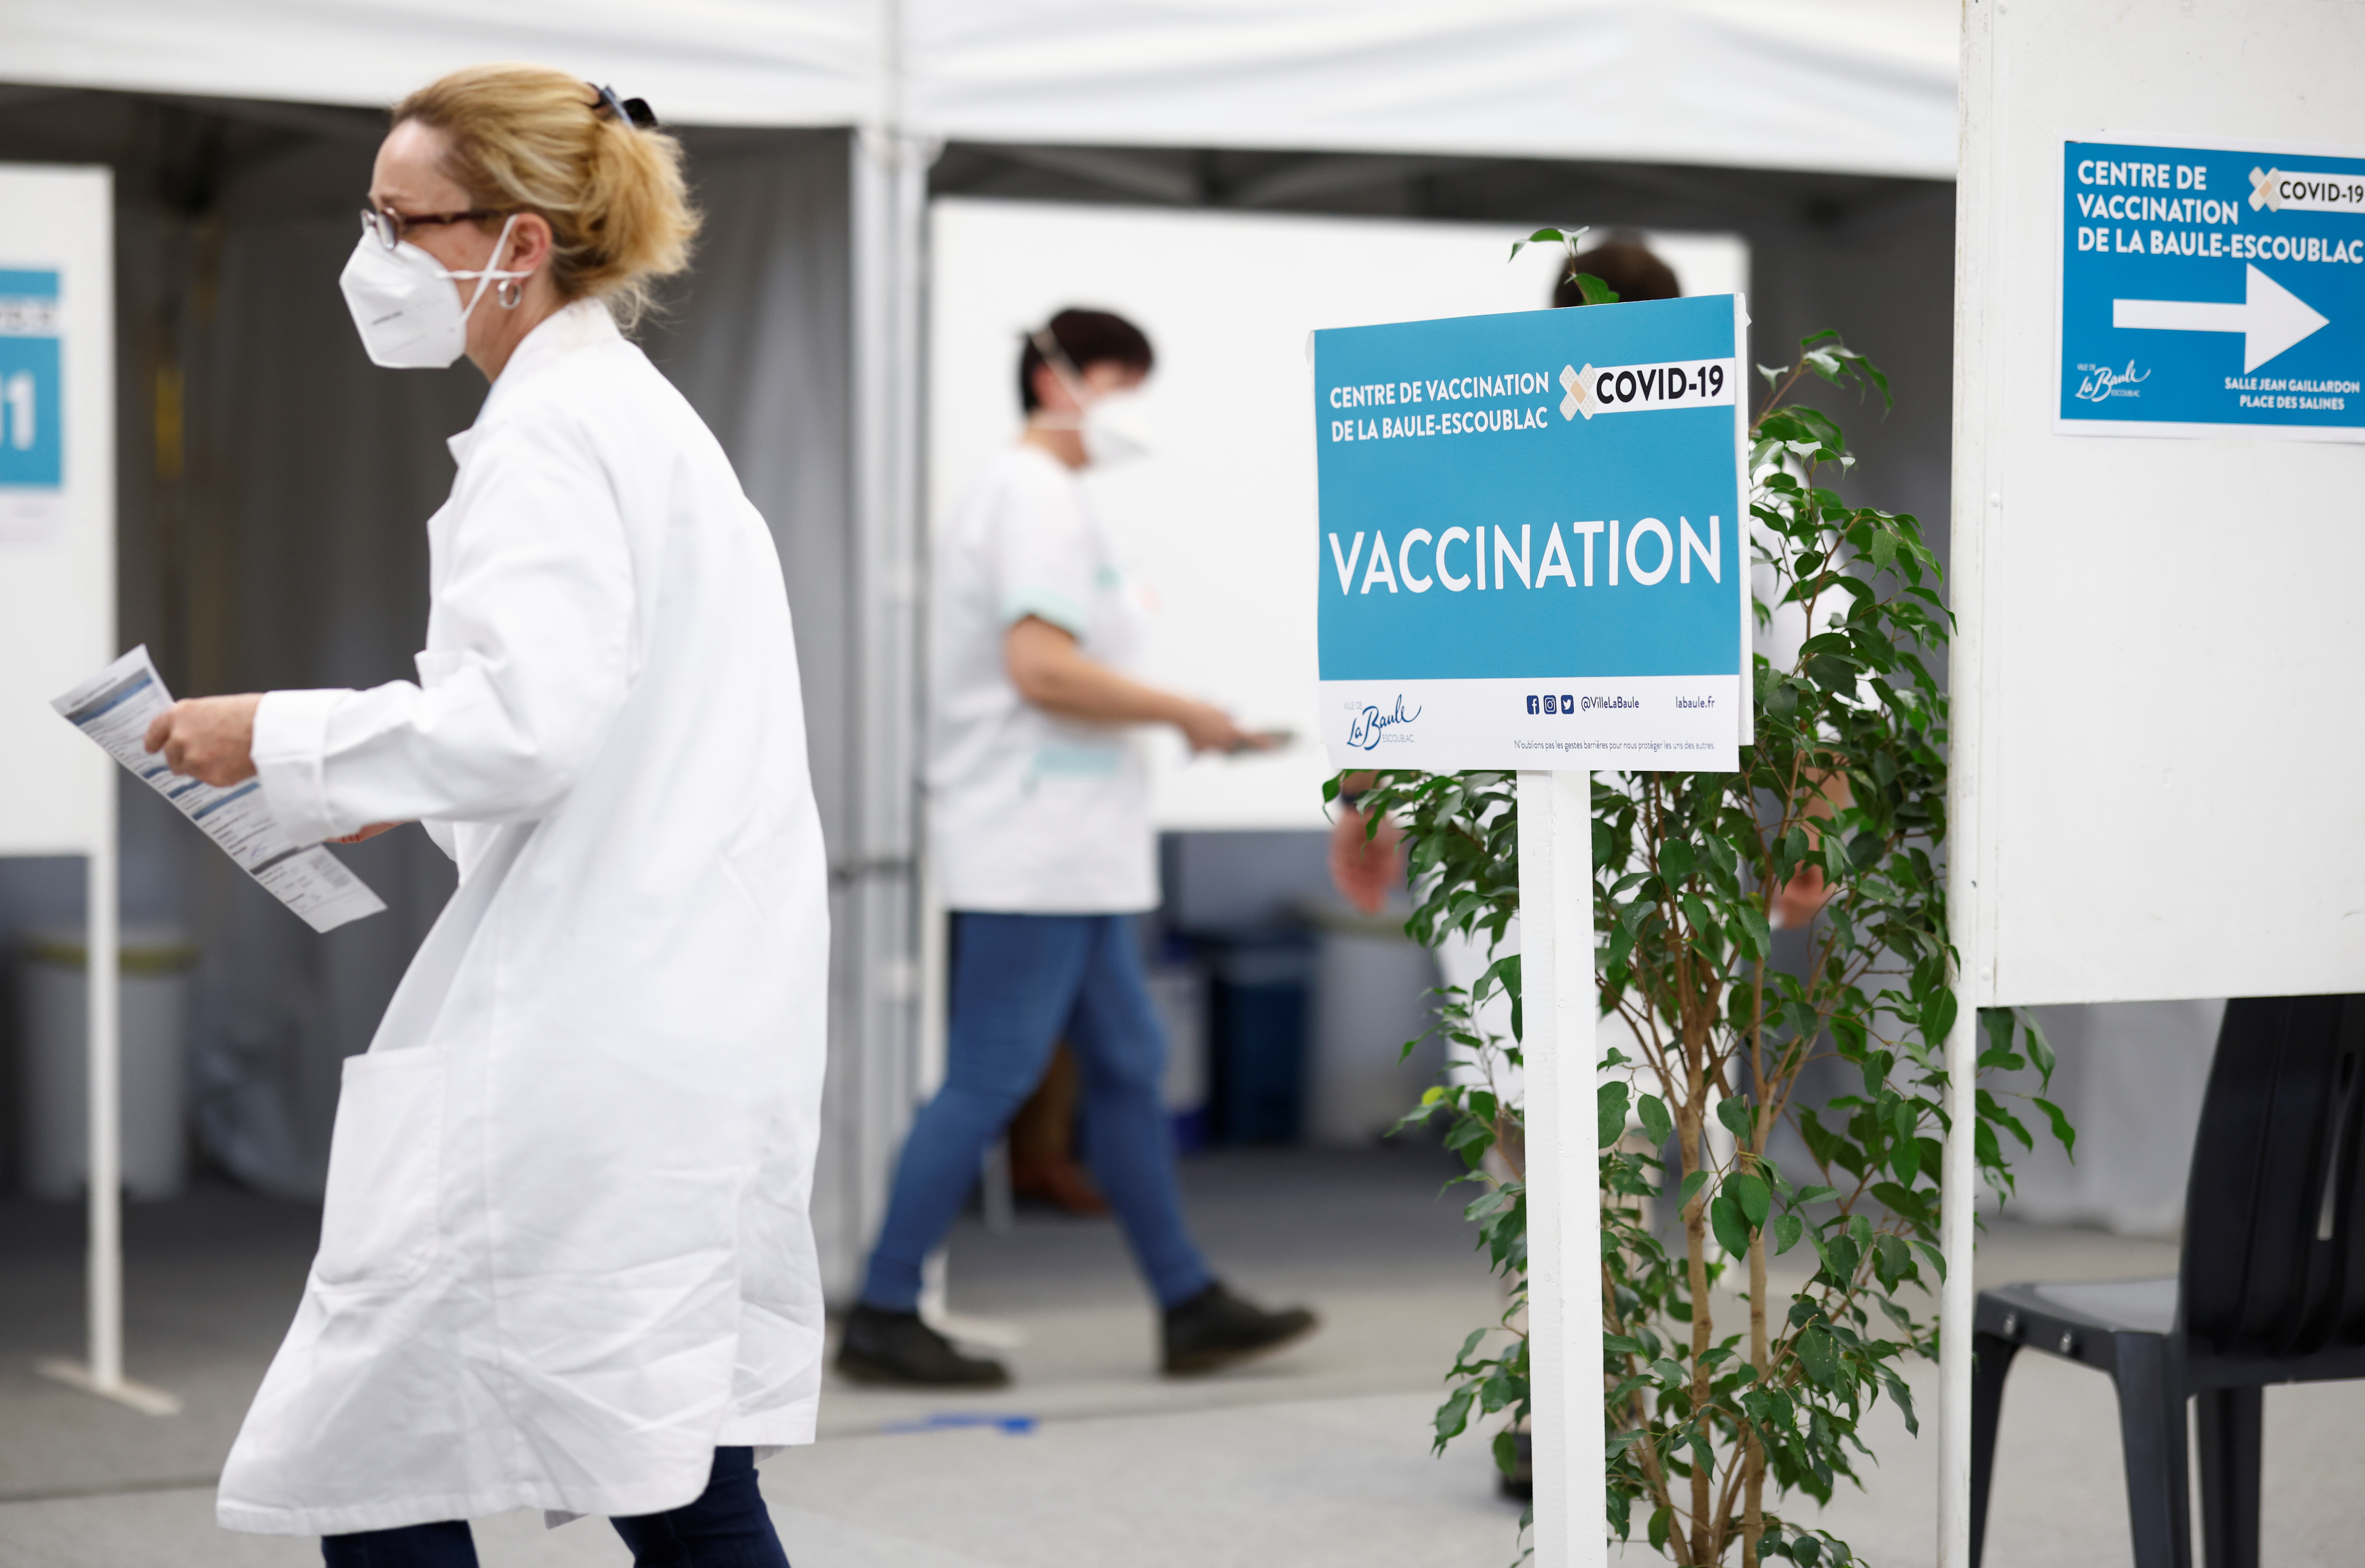 Des membres du personnel médical travaillent dans un centre de vaccination contre la maladie à coronavirus (COVID-19) à La Baule, en France, le 17 février 2021. REUTERS/Stephane Mahe